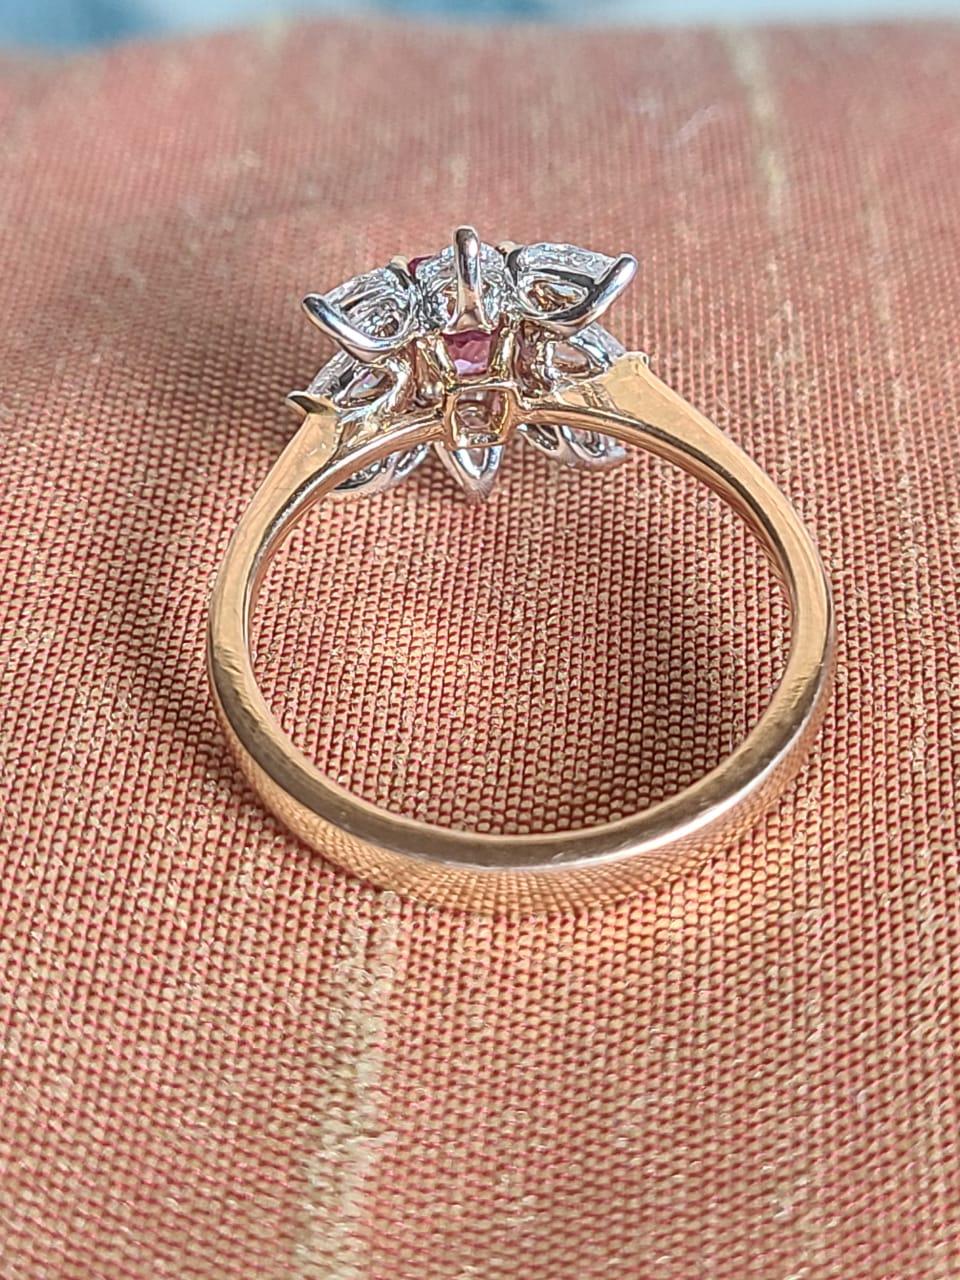 Ein sehr zierlicher und wunderschöner rosafarbener Saphir-Verlobungsring in 18K Rose Gold & Diamanten. Das Gewicht des rosa Saphirs beträgt 0.71 Karat. Das Gewicht der Diamanten im Rosenschliff beträgt 0.65 Karat. Das Nettogewicht des Goldes beträgt